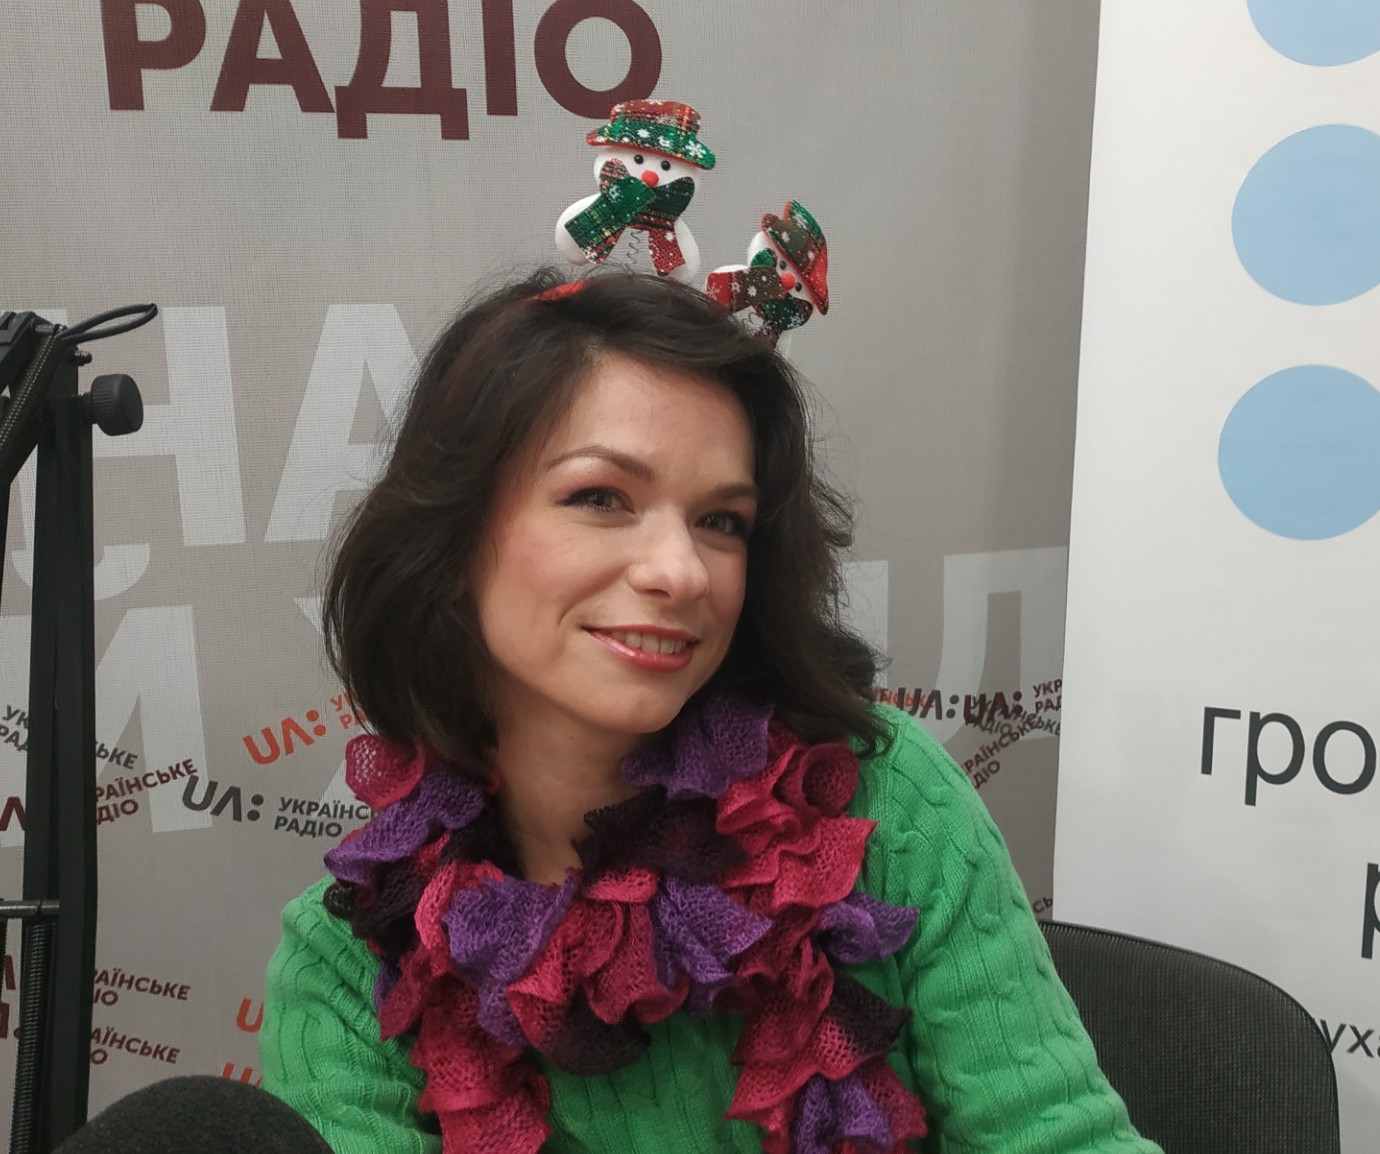 Шукаючи україномовних пісень для дітей, почала писати їх сама — авторка проекту дитячих пісень Yokoдошка